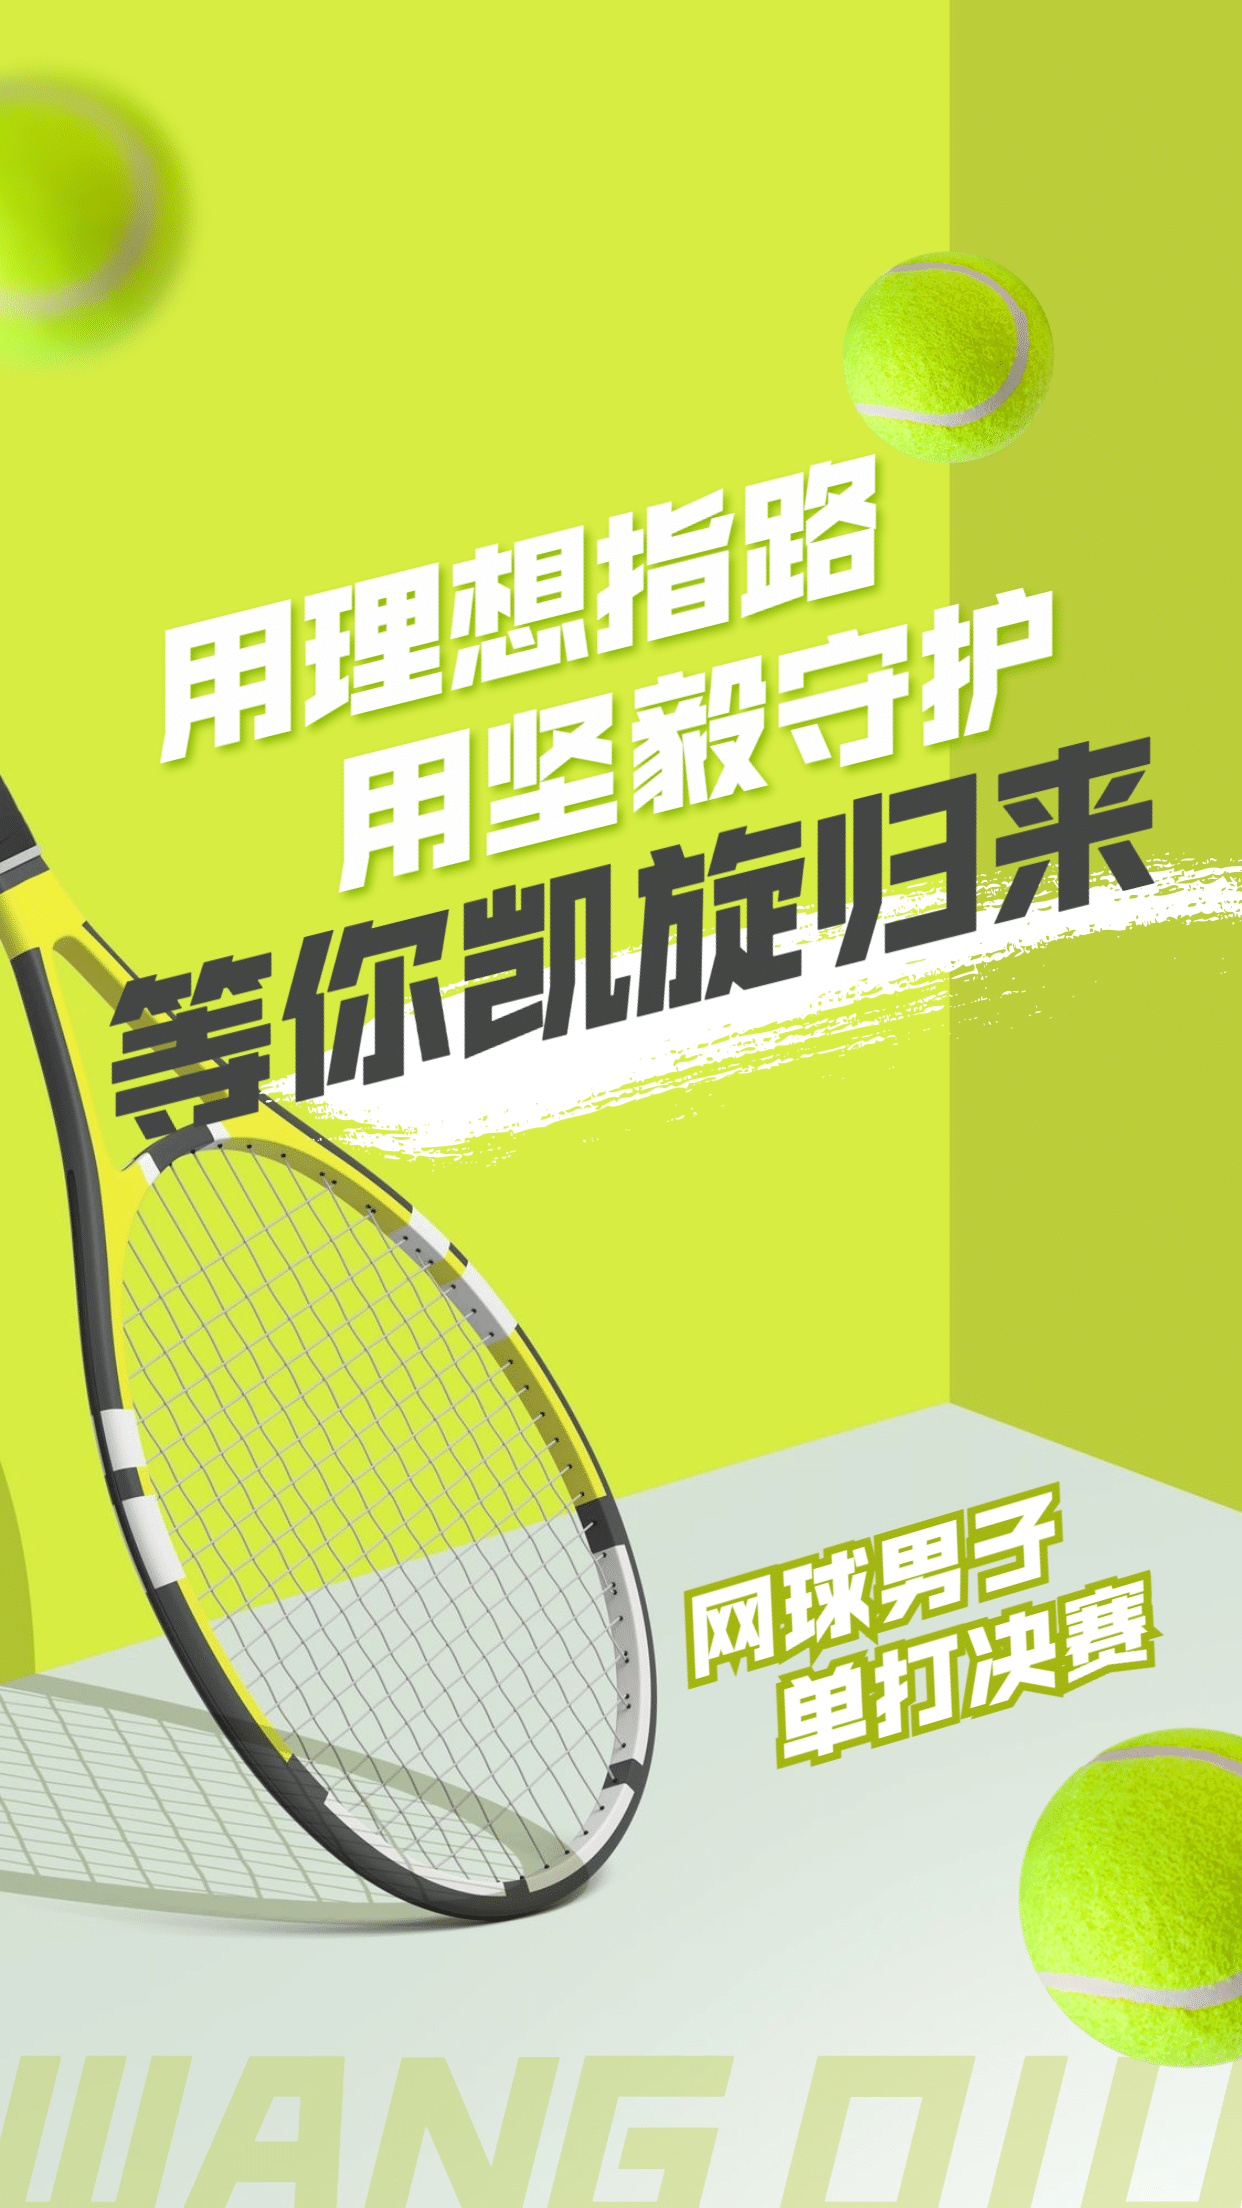 网球运动赛事祝福加油海报预览效果